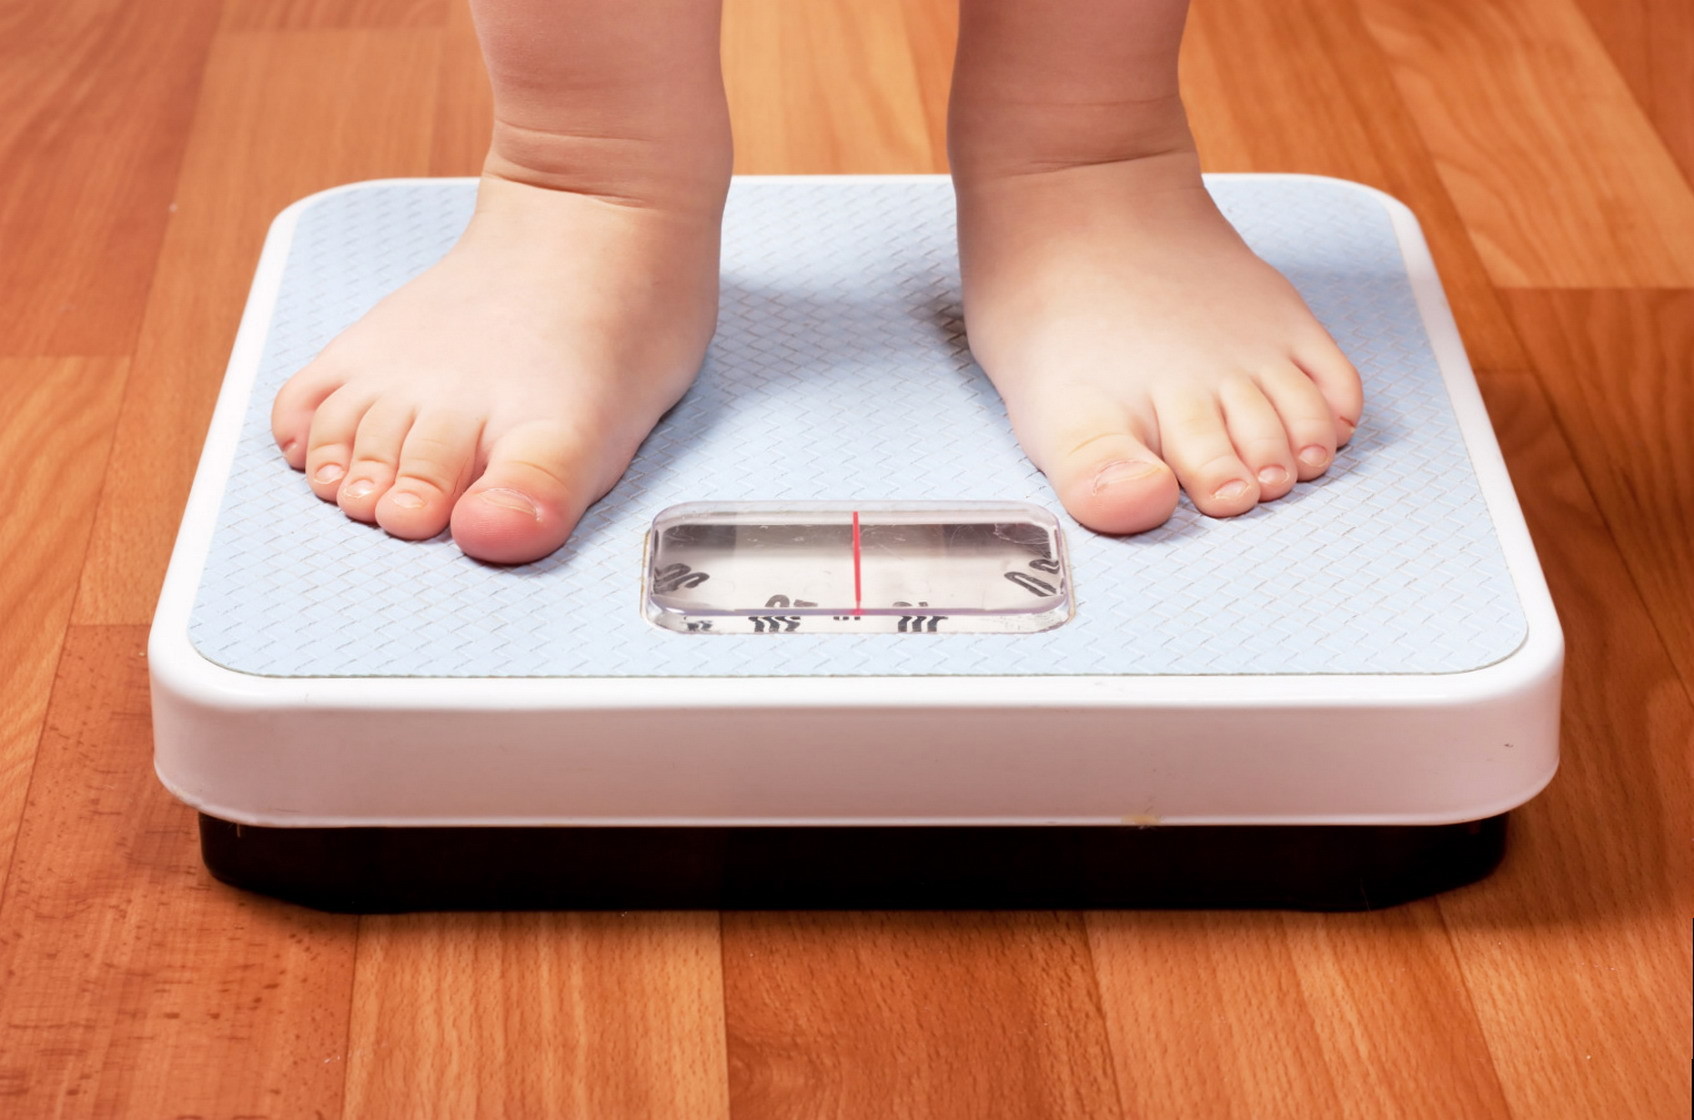 Первые признаки детского ожирения до 1 года жизни